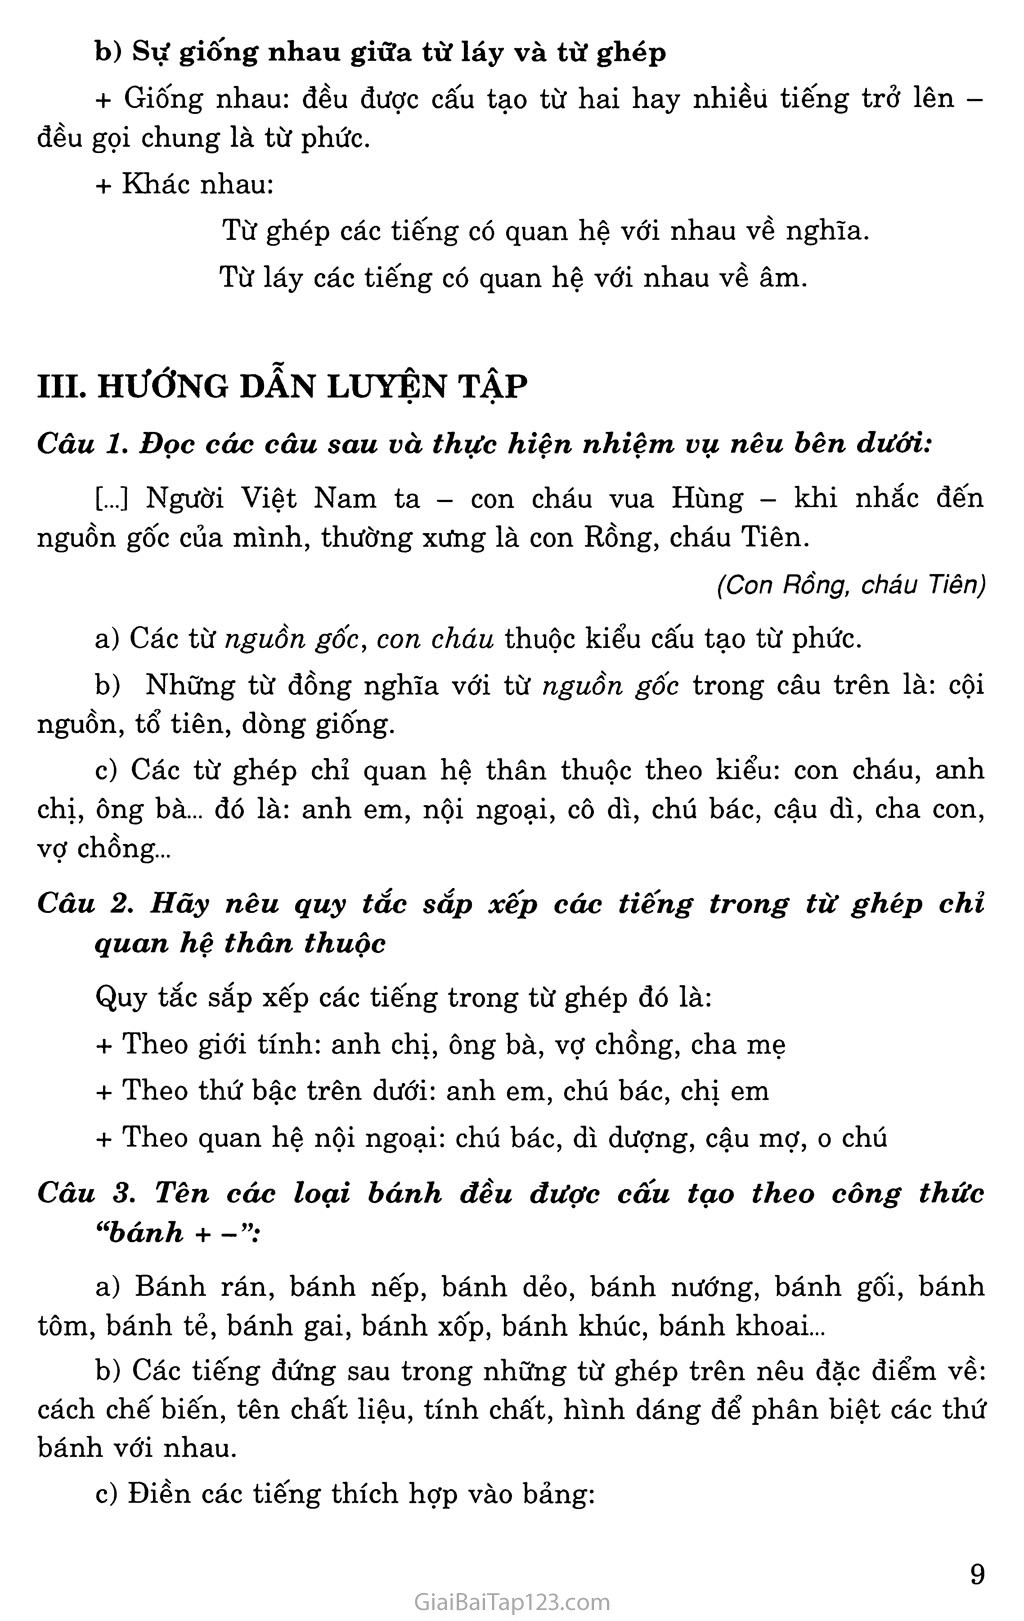 Từ và cấu tạo từ Tiếng Việt trang 2